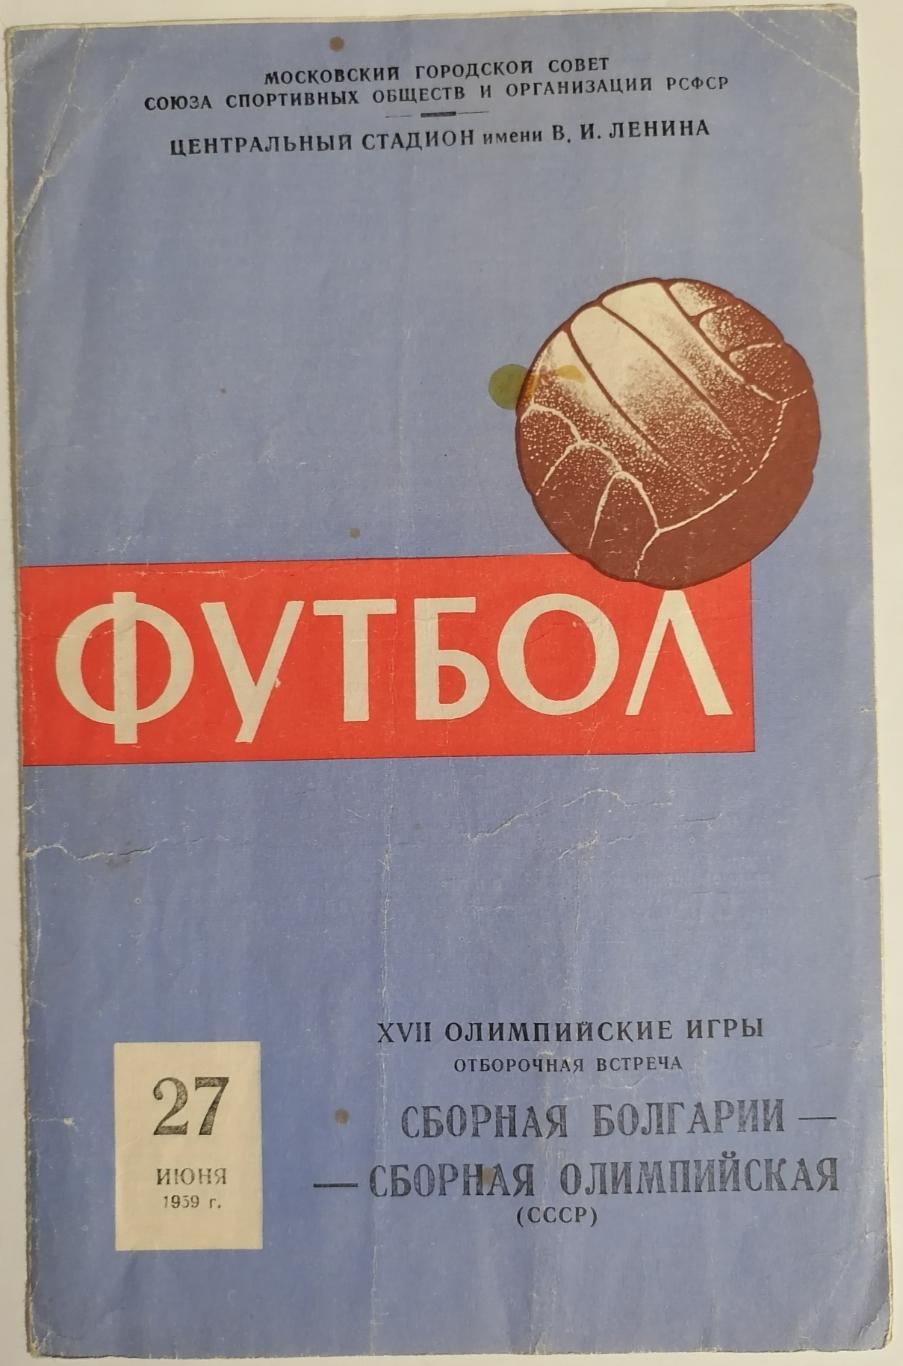 Сборная Олимпийская СССР - БОЛГАРИЯ 1959 официальная программа